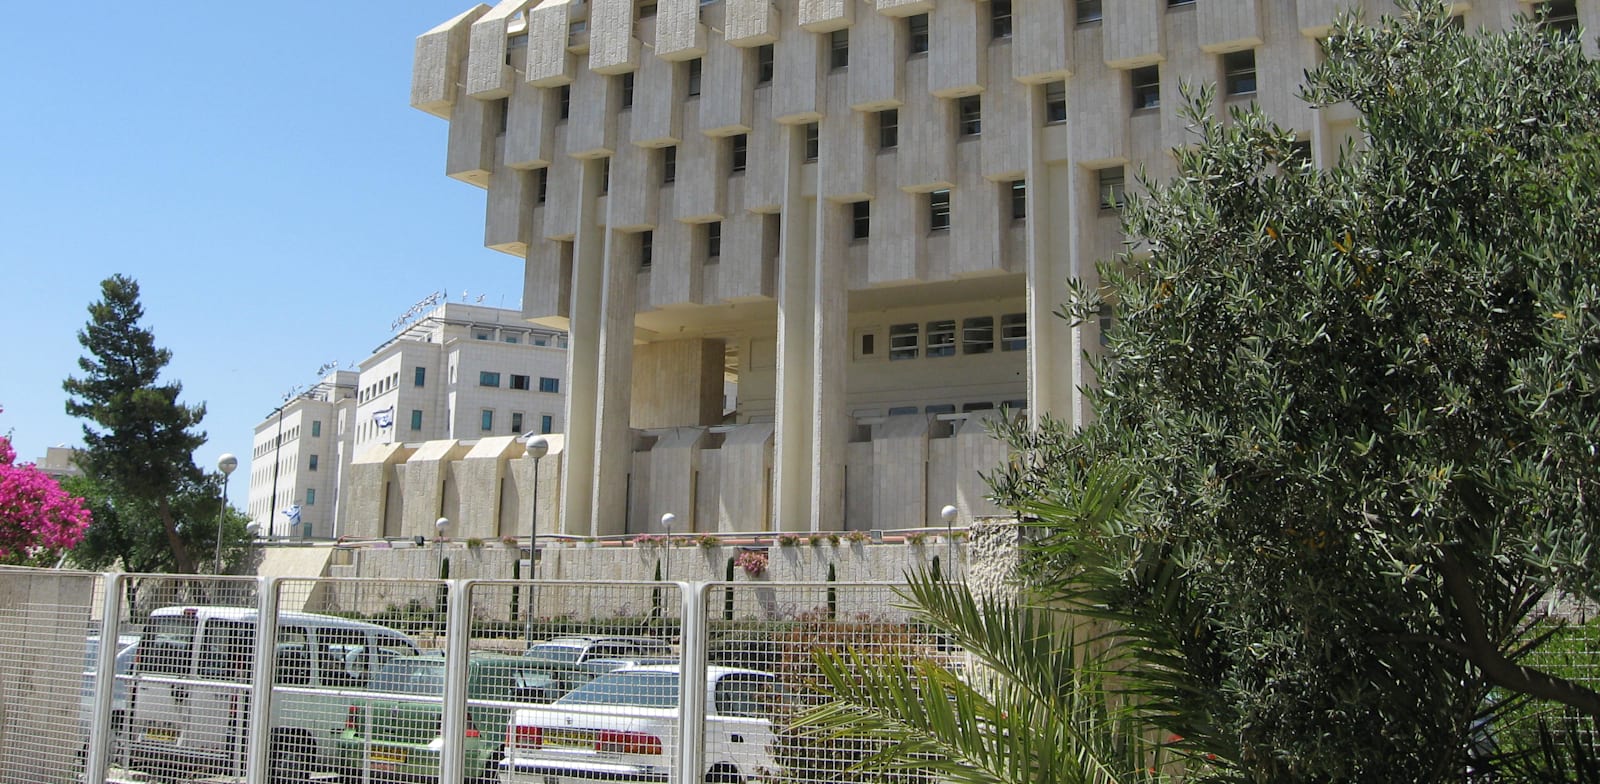 בנק ישראל בירושלים / צילום: אורית דיל